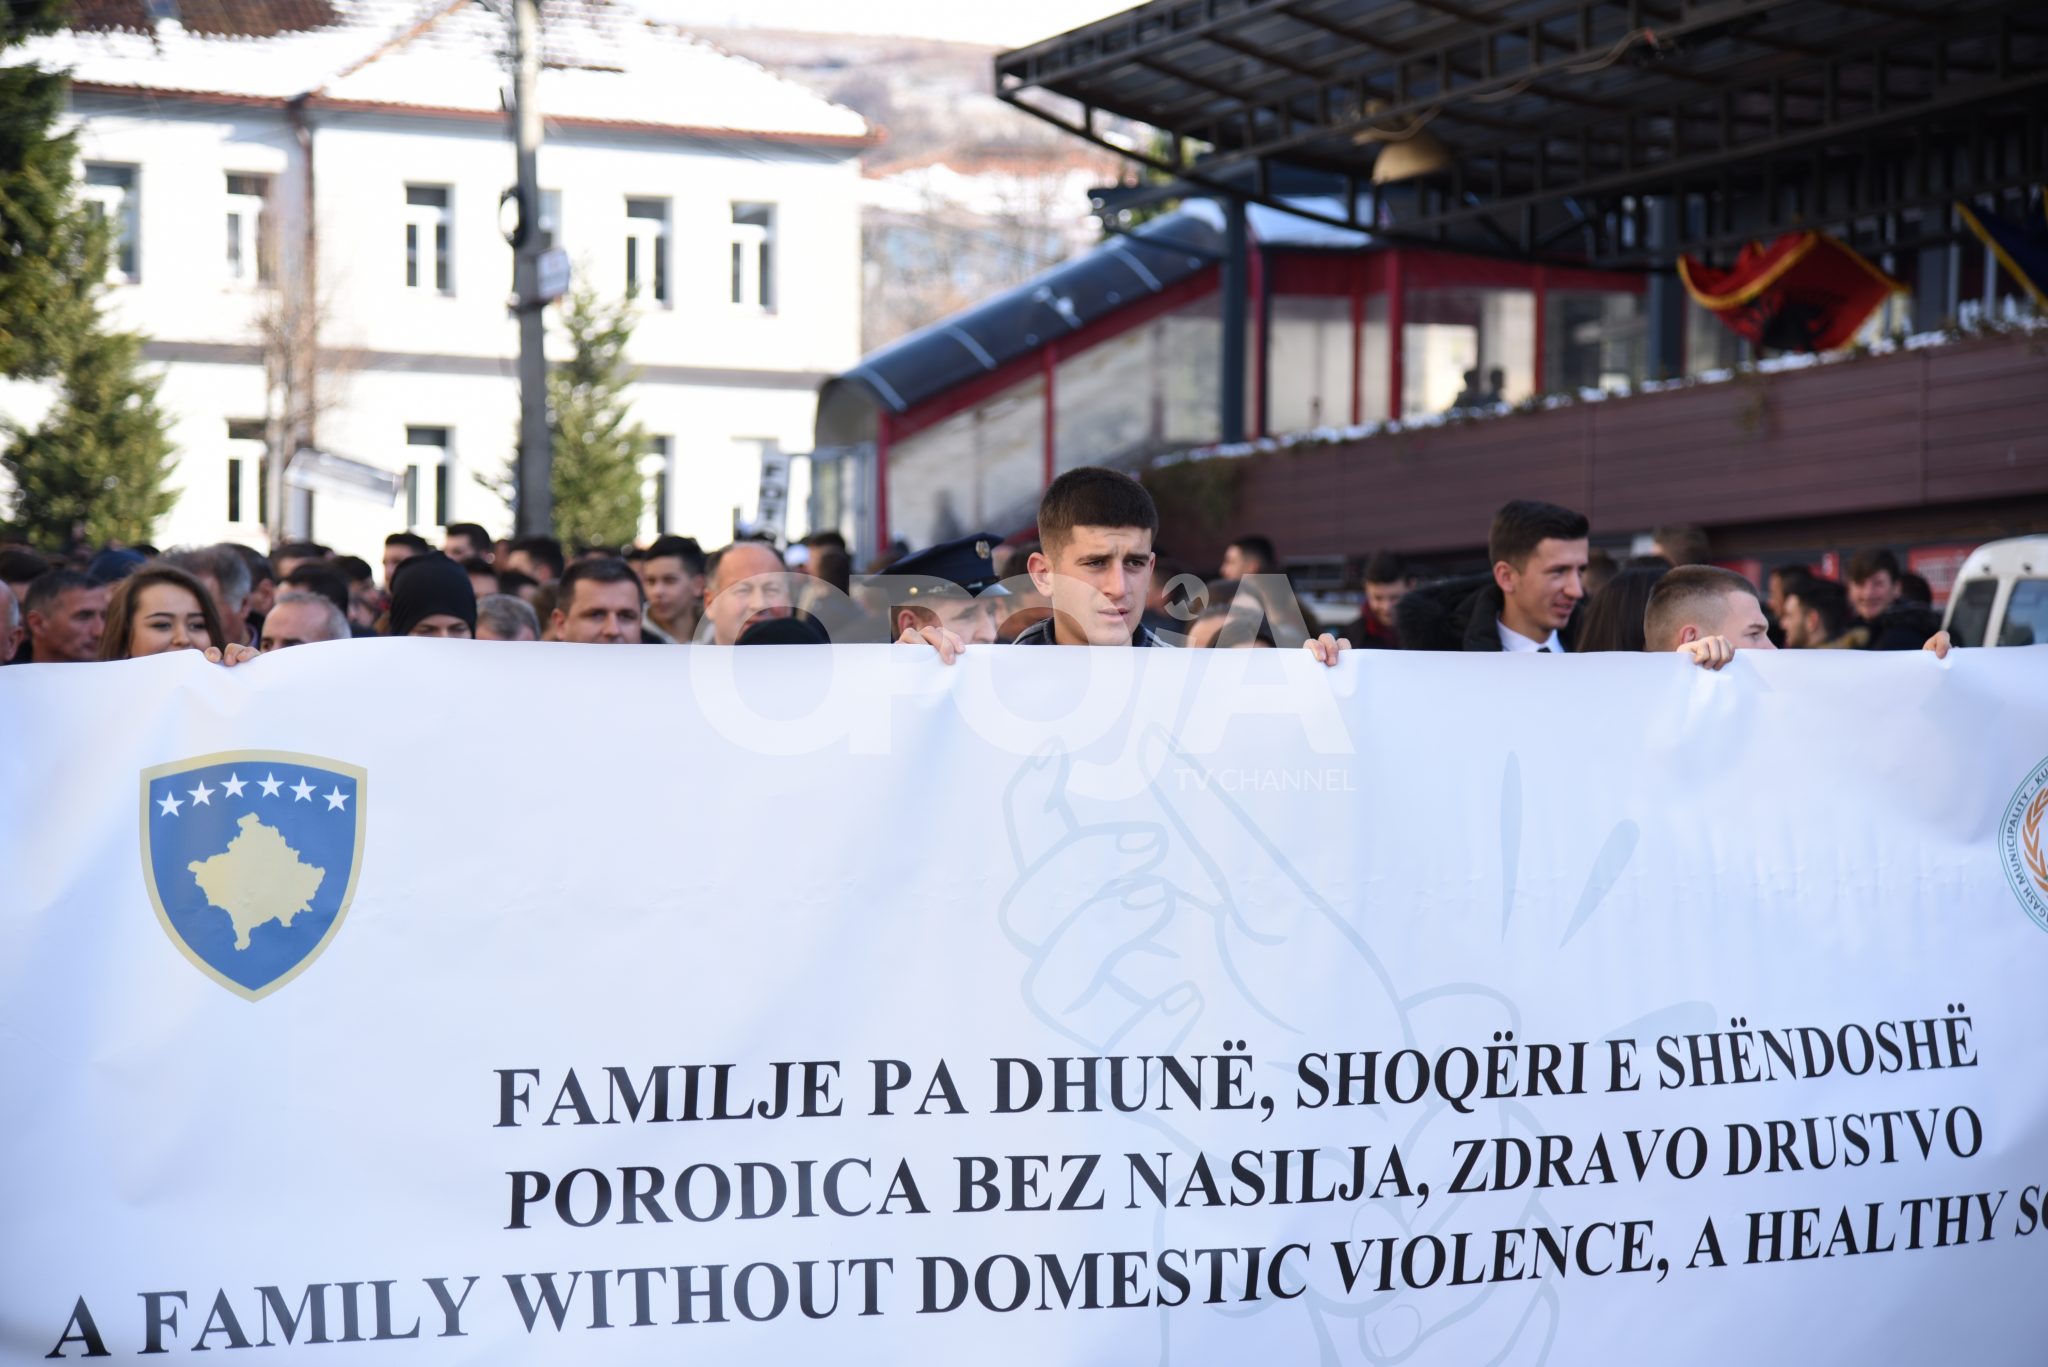 “Familje pa dhunë, shoqëri e shëndoshë”, marsh i organizuar kundër dhunës në familje (Video, Foto)